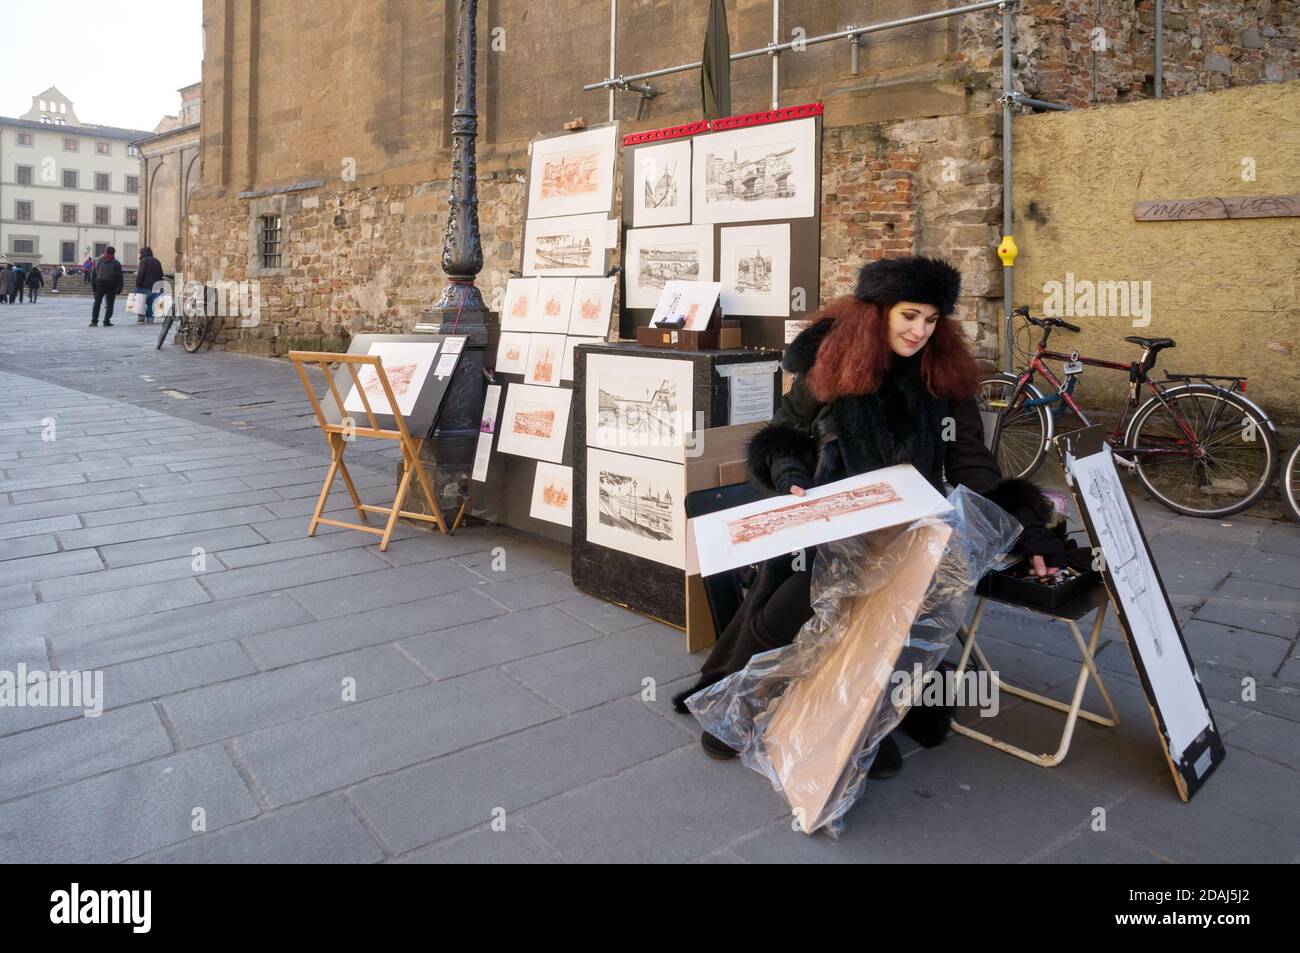 Un artista femminile vende i suoi dipinti vicino al muro di un edificio in una corsia di strada. Foto Stock